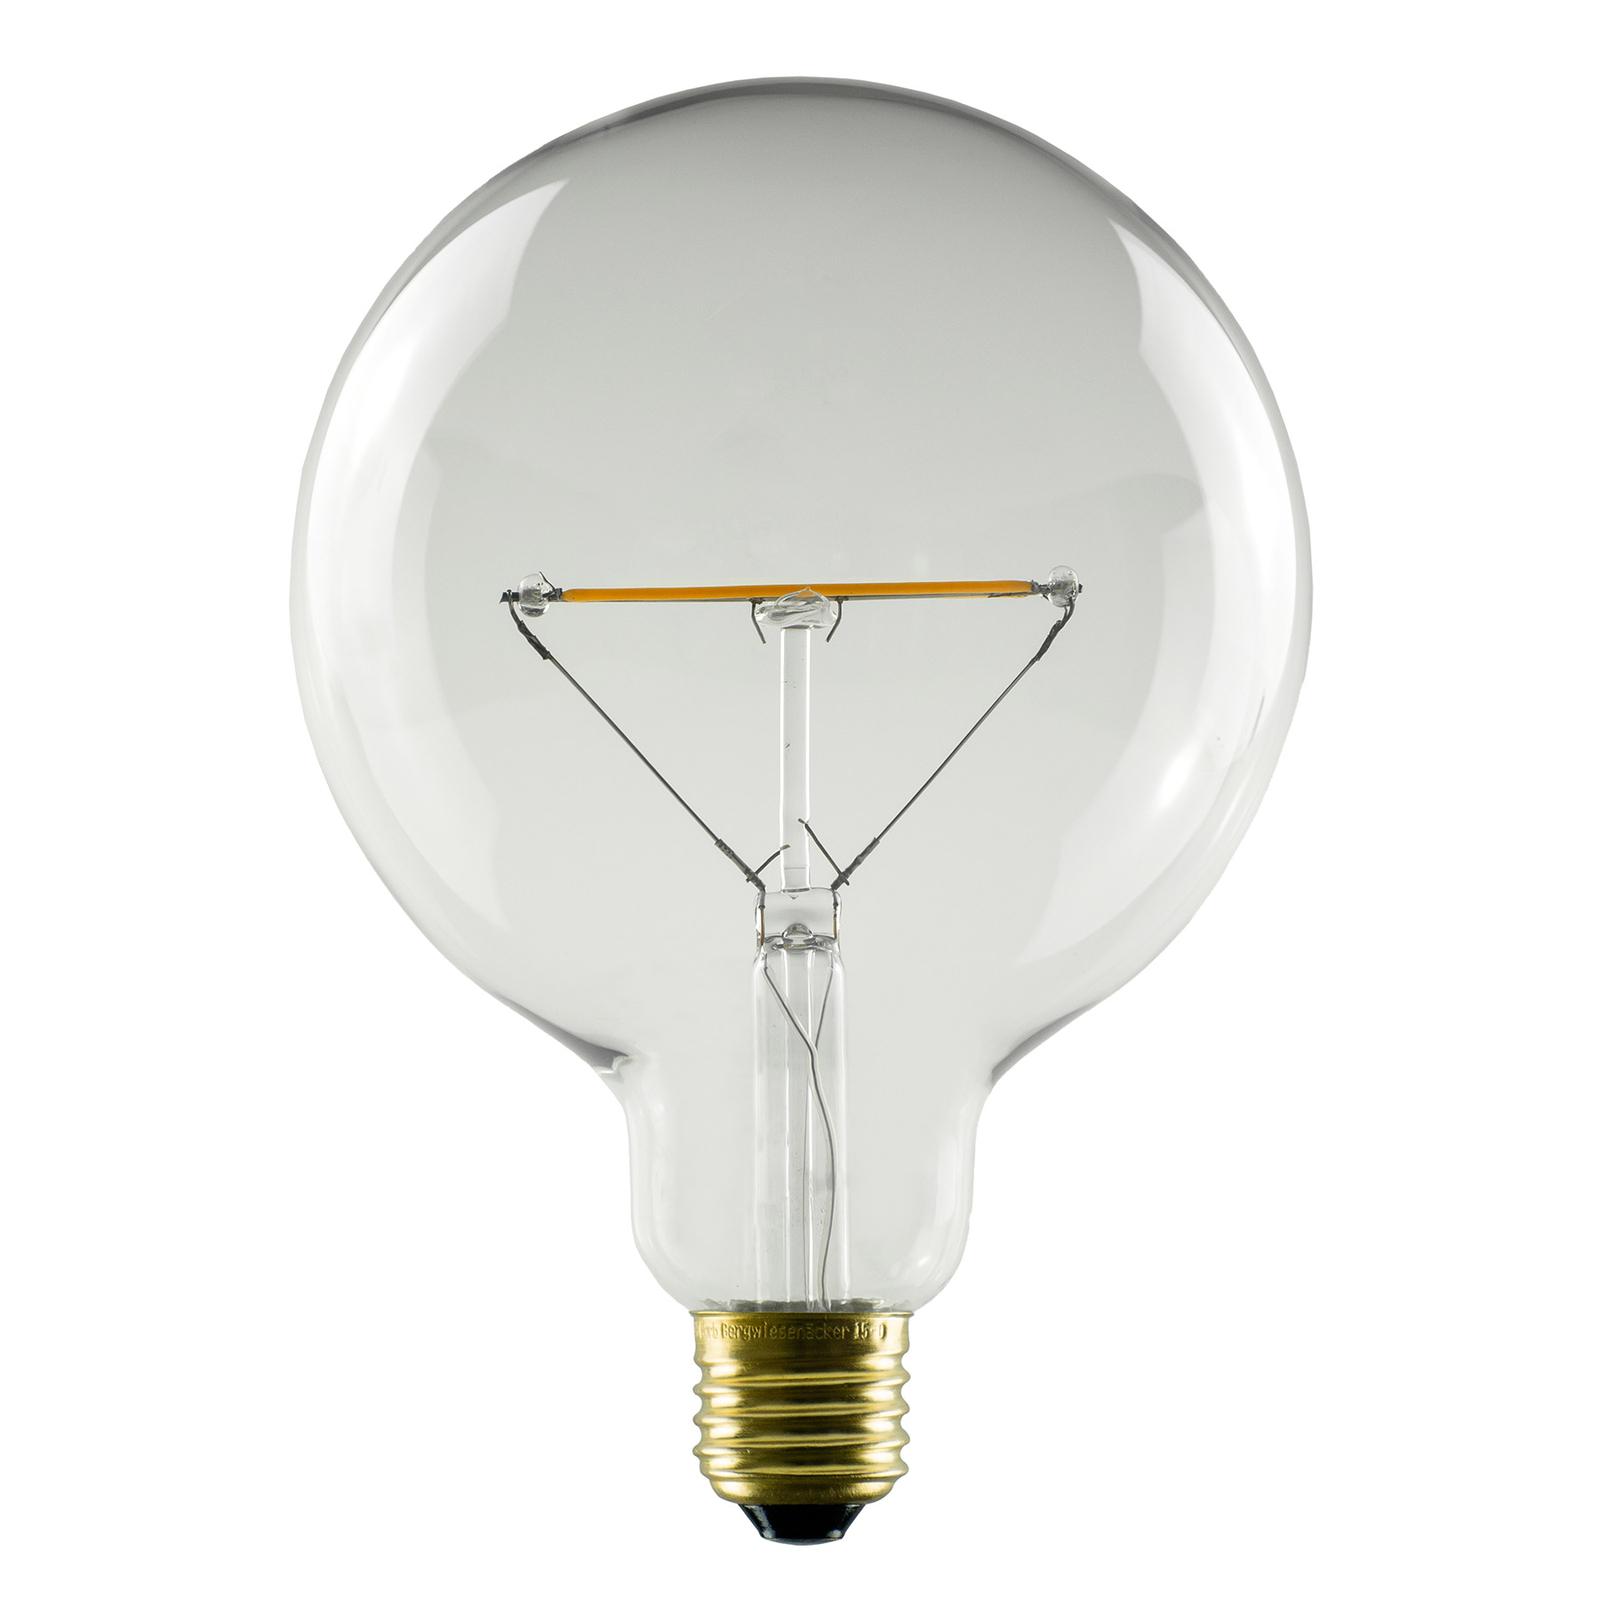 SEGULA LED globe bulb E27 3W 2,200K dimmable clear